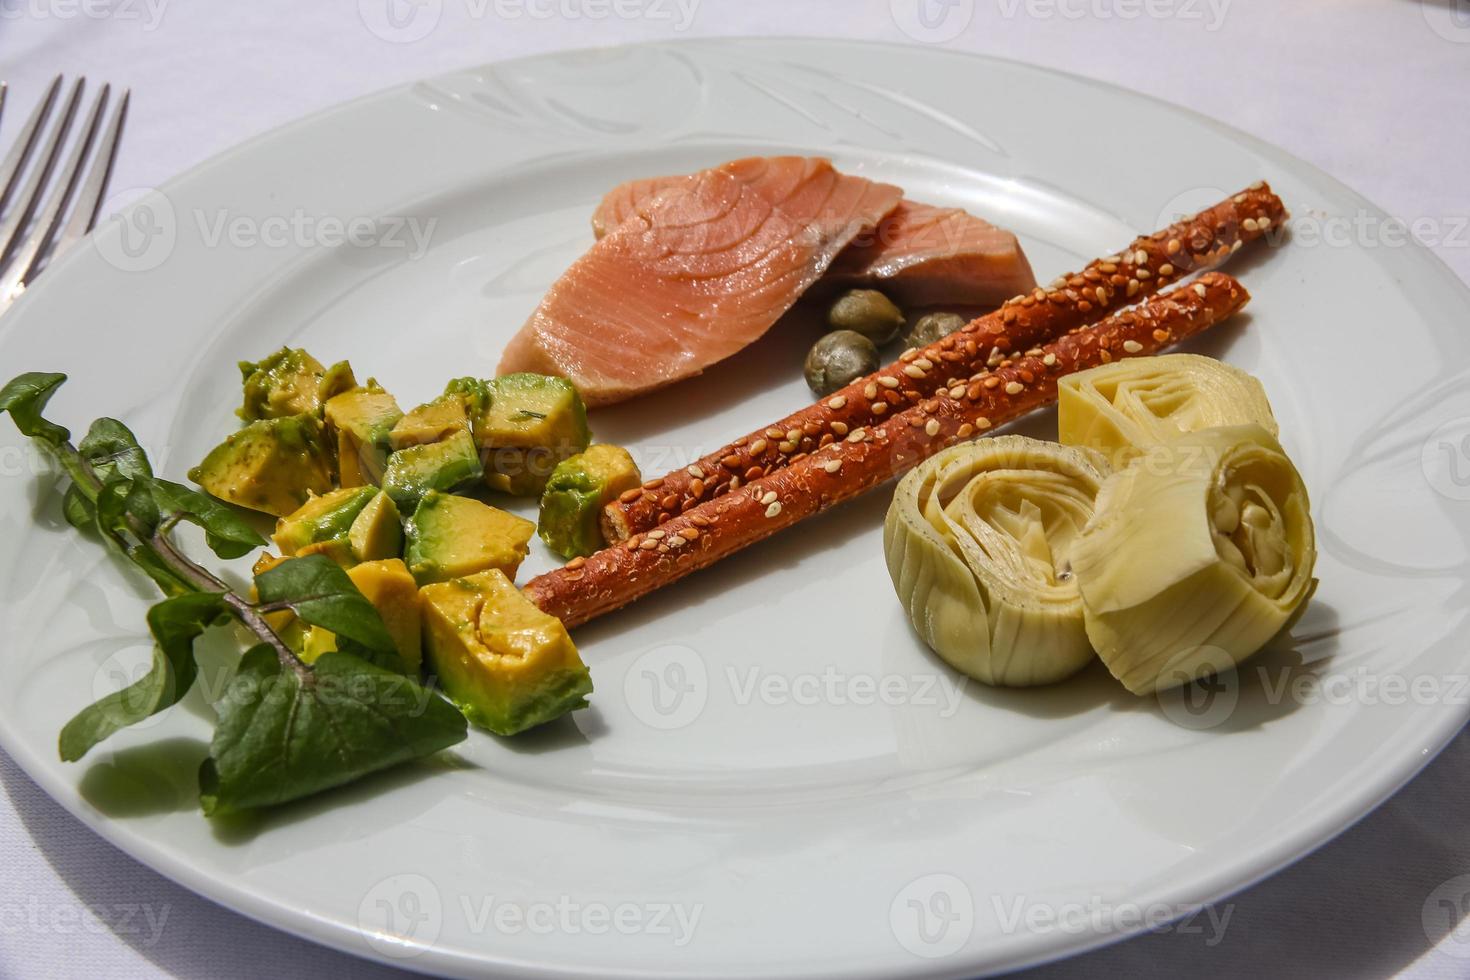 salmone con avocado e carciofi foto